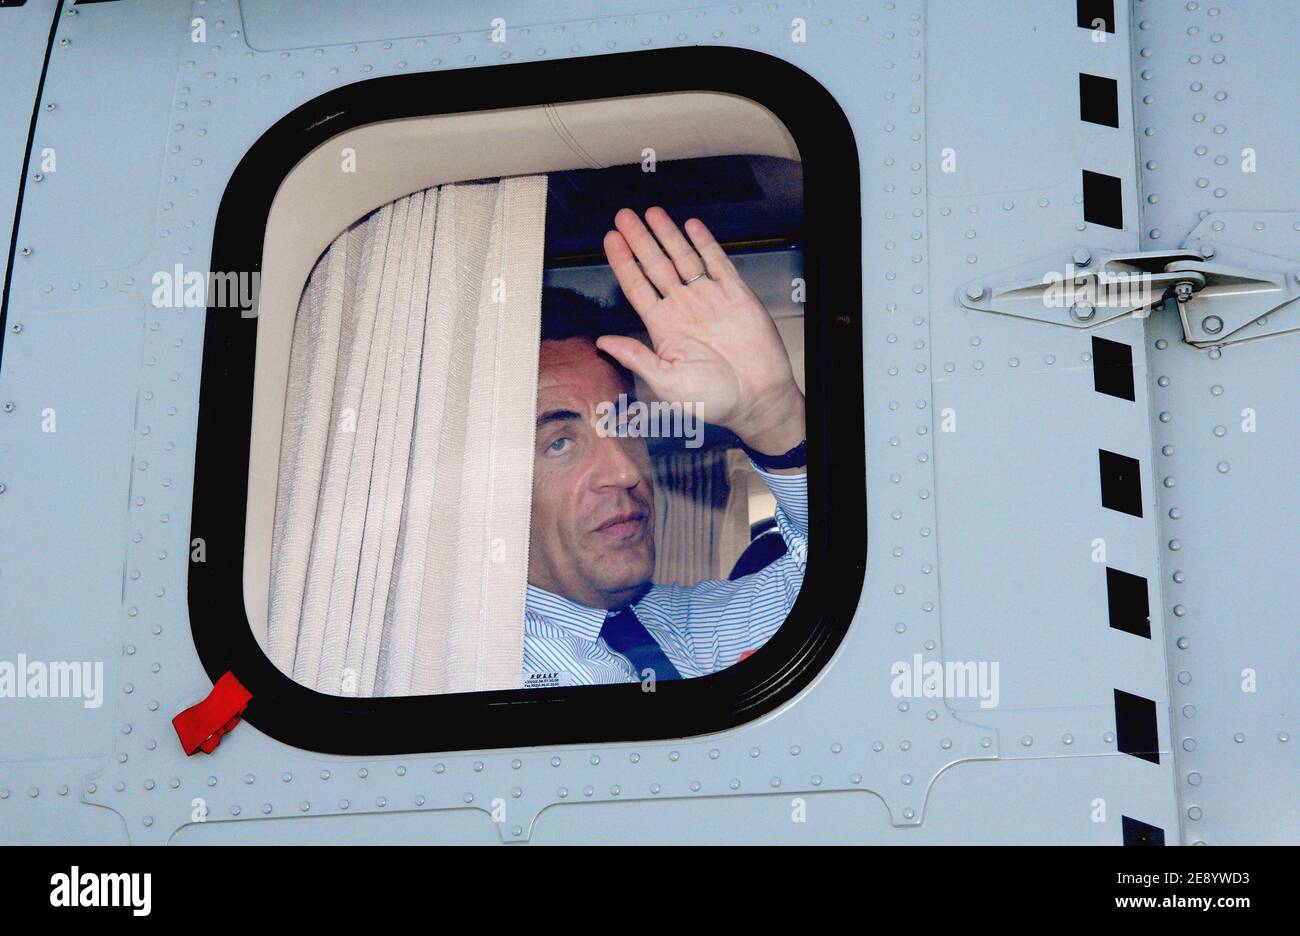 Le président français Nicolas Sarkozy quitte l'aéroport de Tanger, au Maroc, le 23 octobre 2007, le deuxième jour d'une visite d'État de trois jours au Royaume du Maroc. Photo de Christophe Guibbbaud/ABACAPRESS.COM Banque D'Images